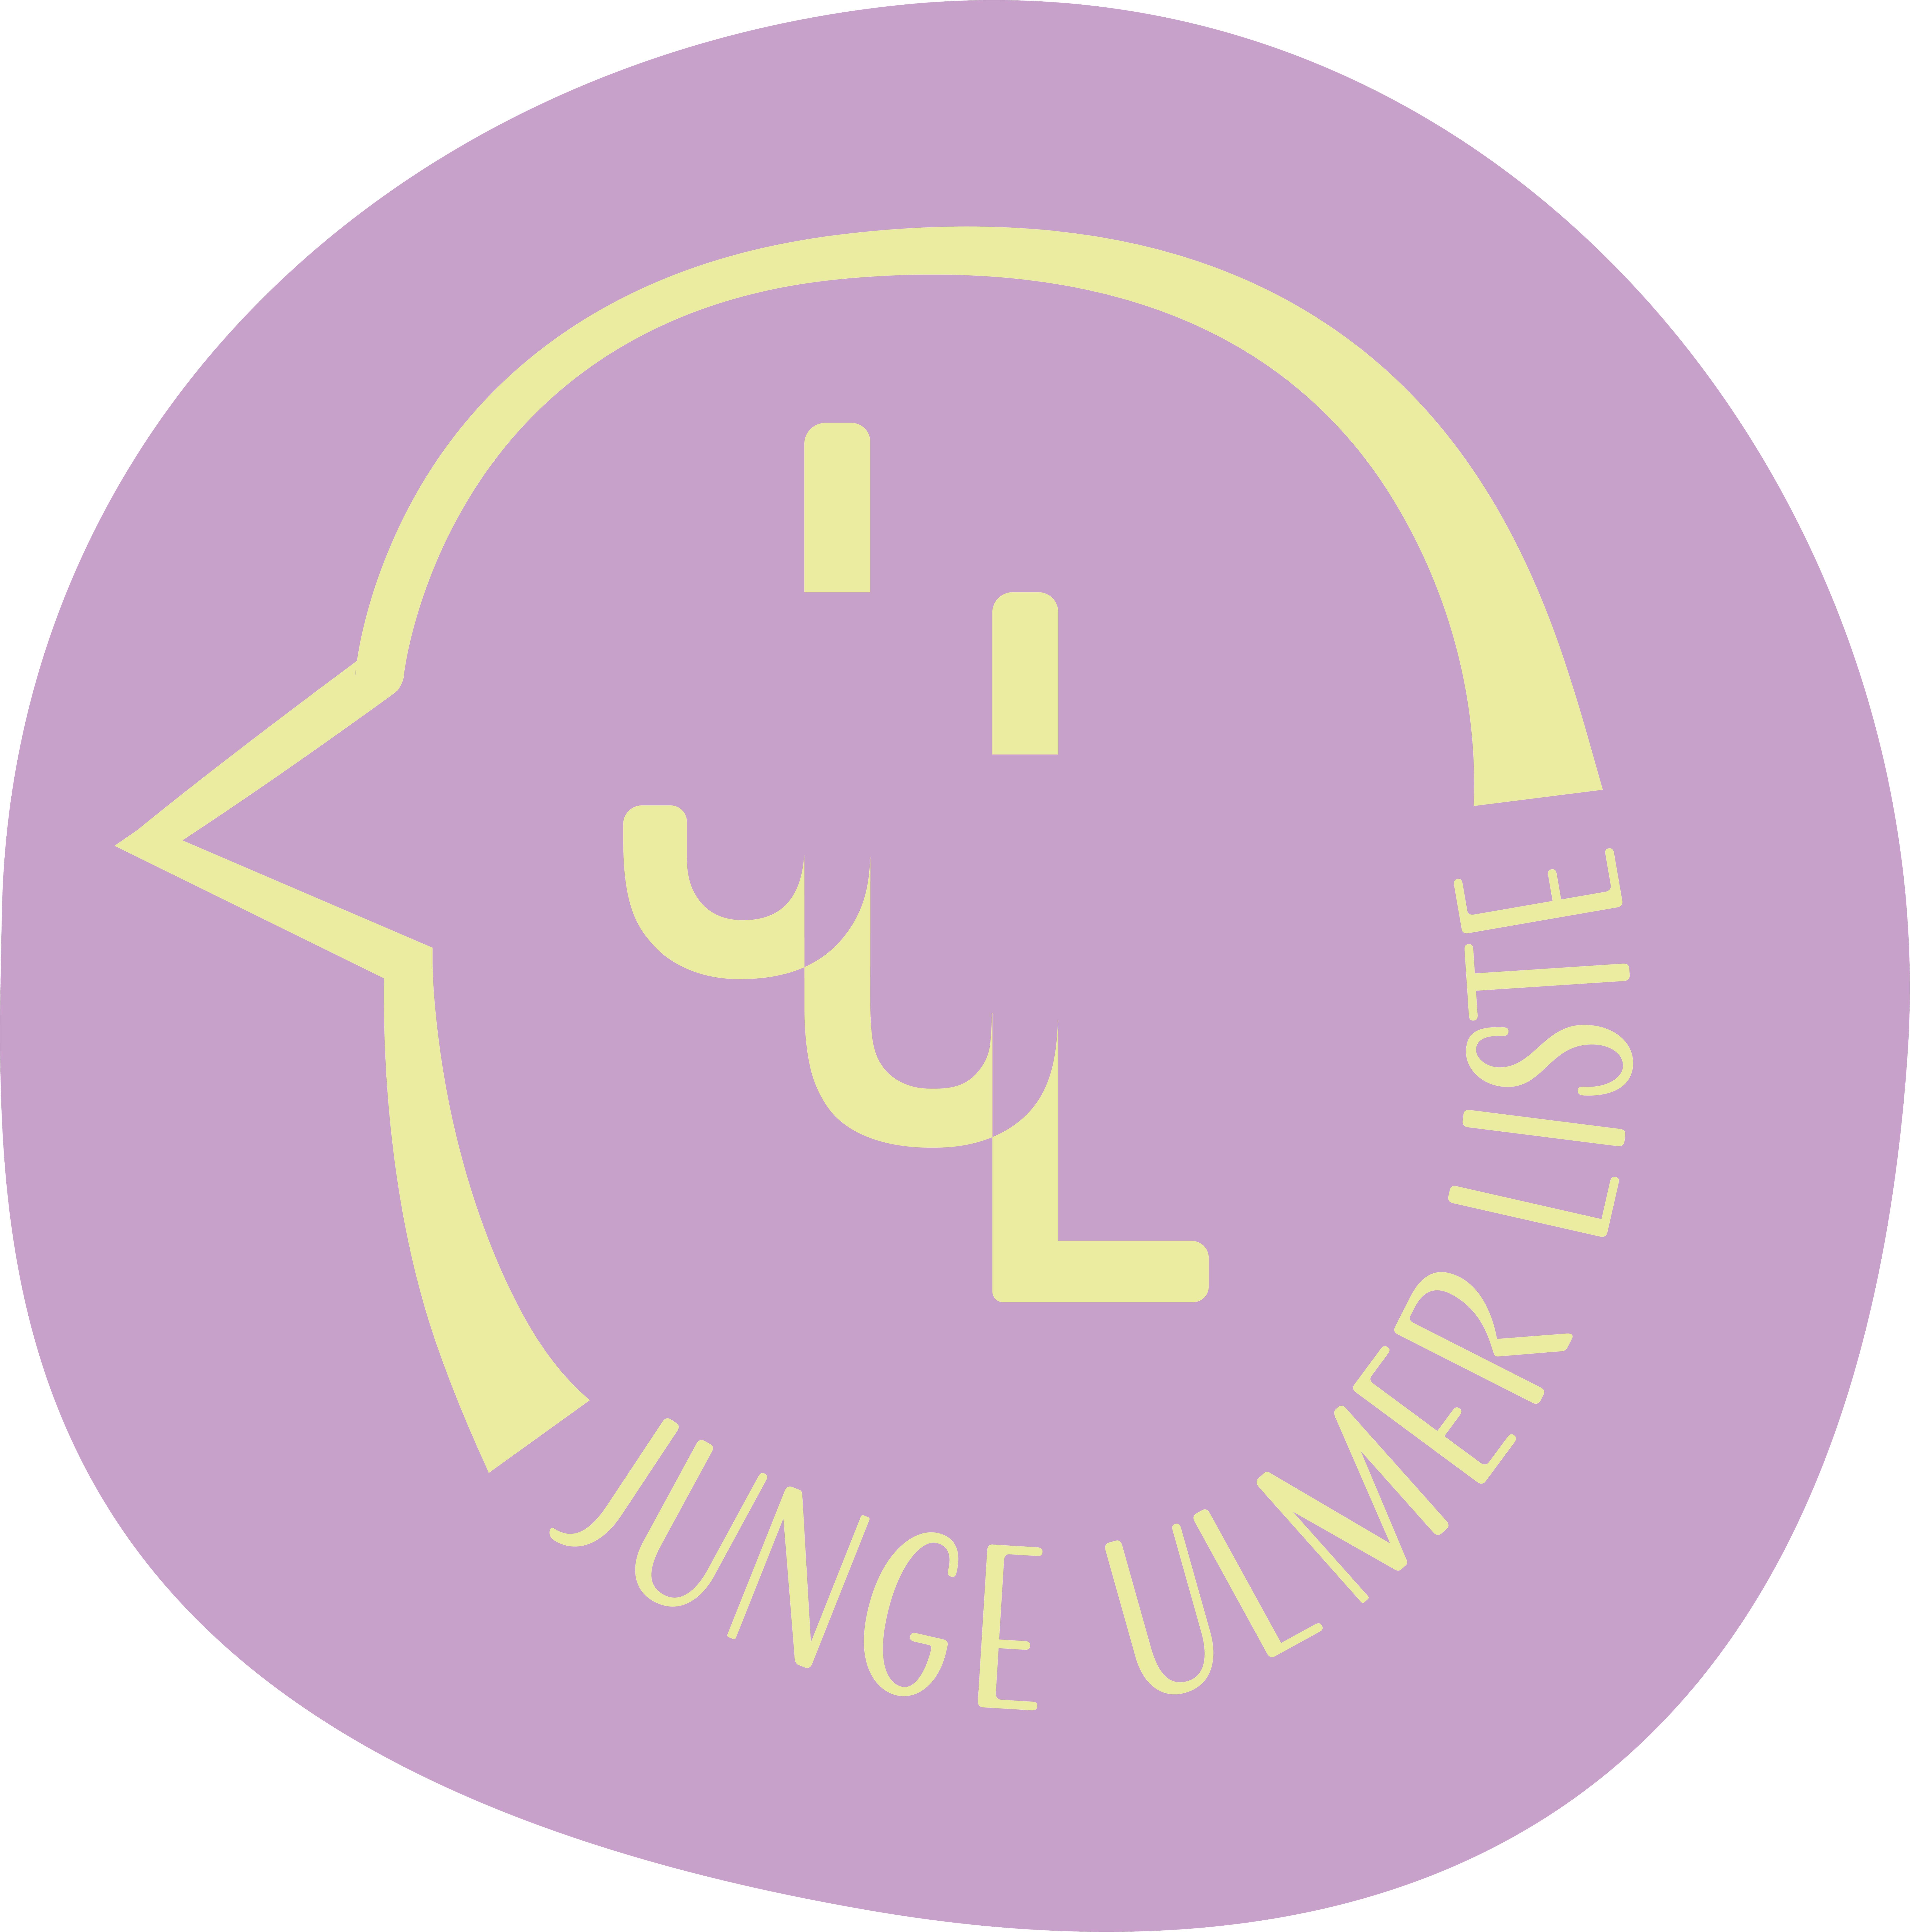 Junge Ulmer Liste Logo